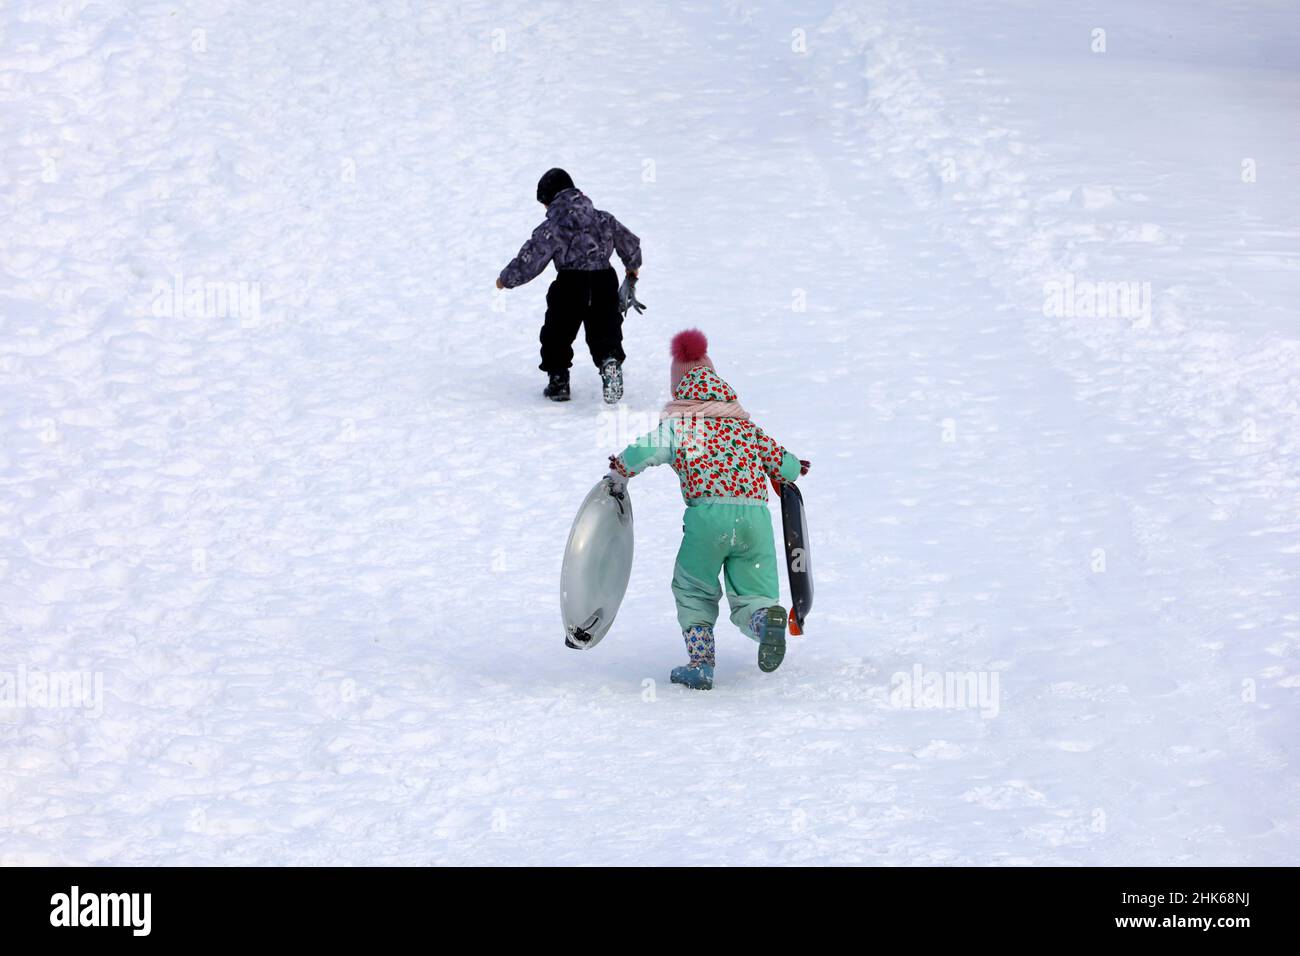 Luge dans un parc d'hiver, neige.Les enfants grimpent le toboggan pour le faire descendre Banque D'Images